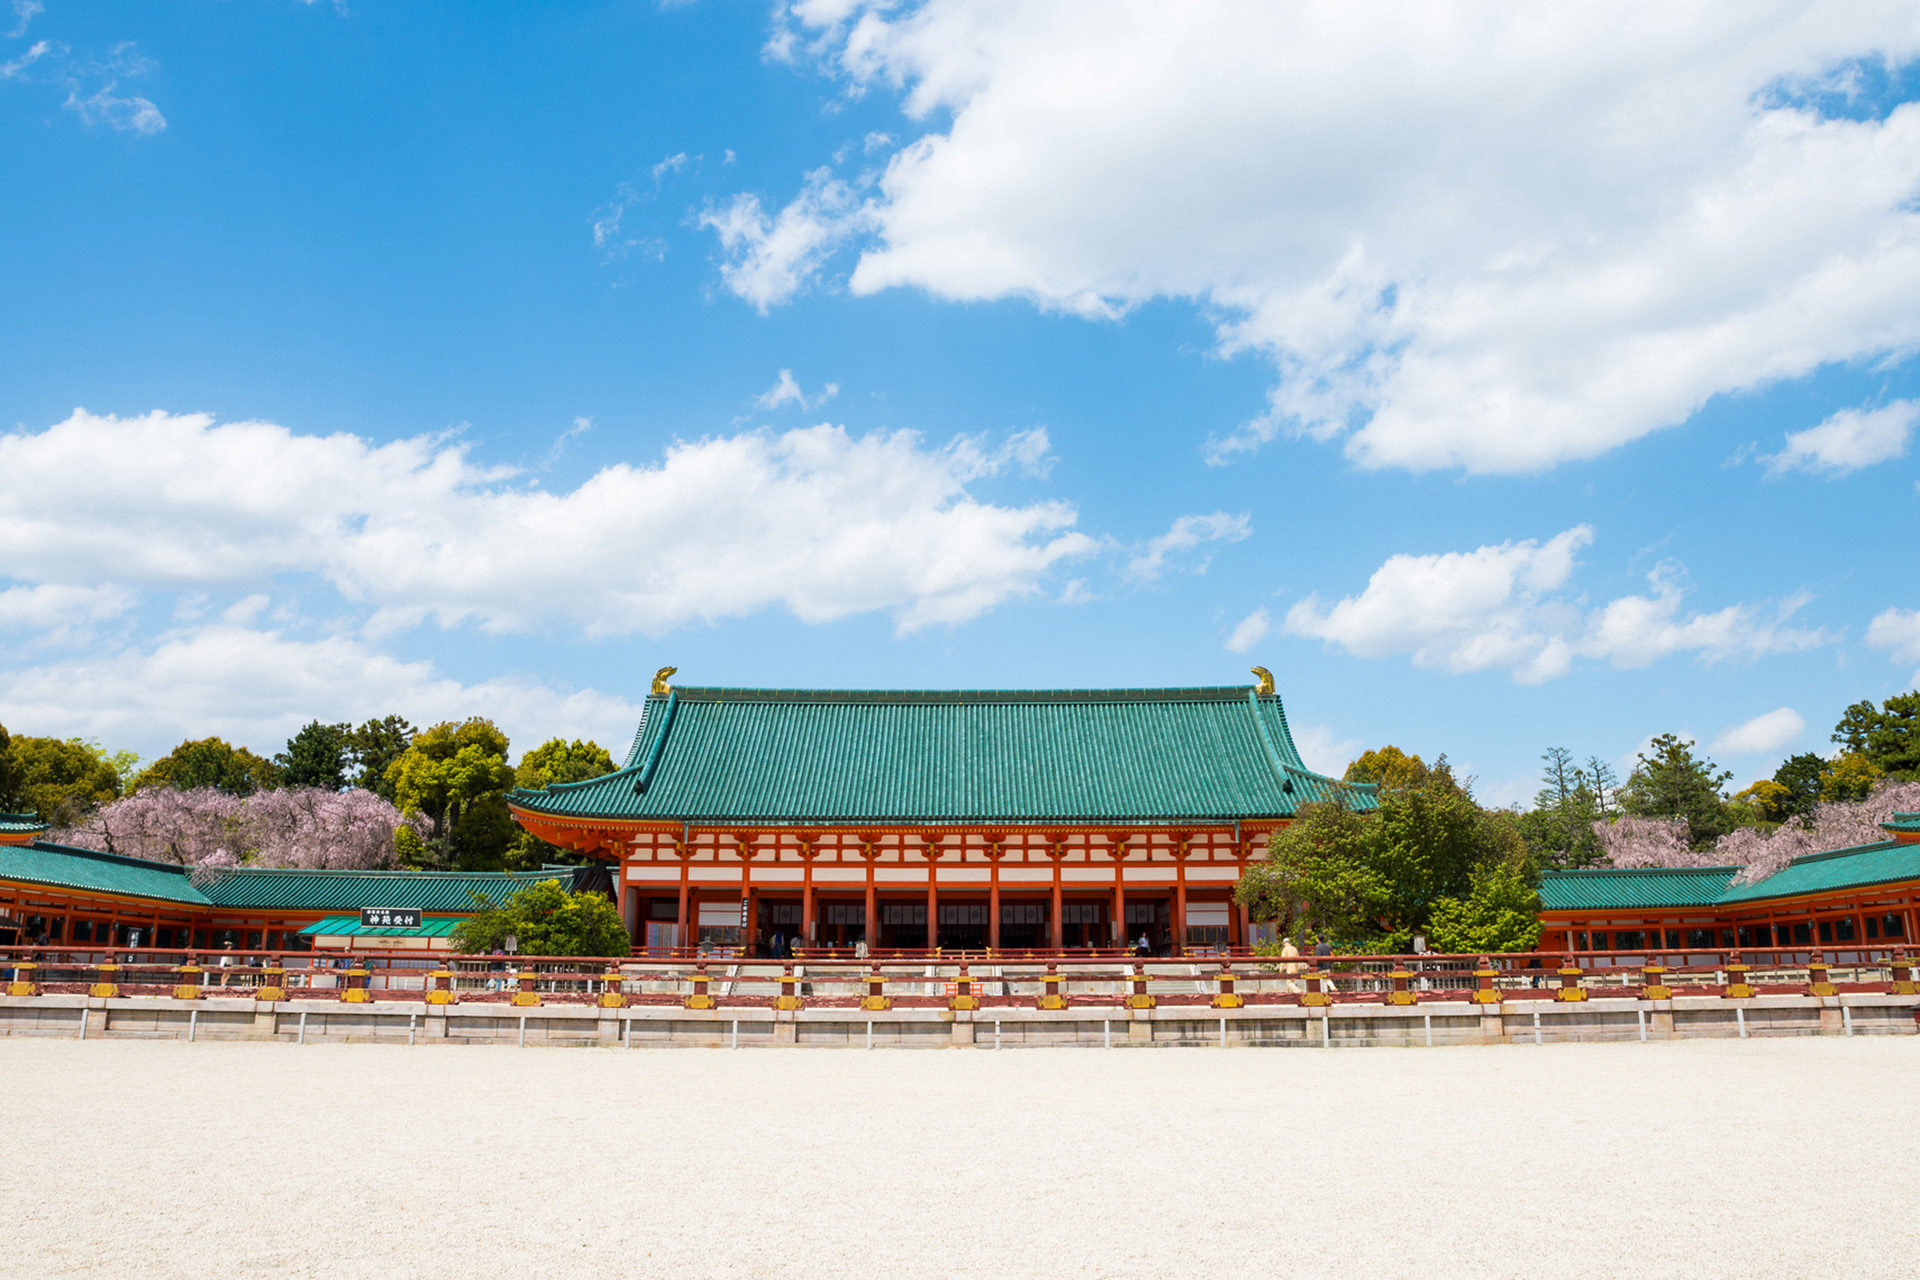 京都の平安神宮で見られる 桜の絶景とは Caedekyoto カエデ京都 紅葉と伝統美を引き継ぐバッグ